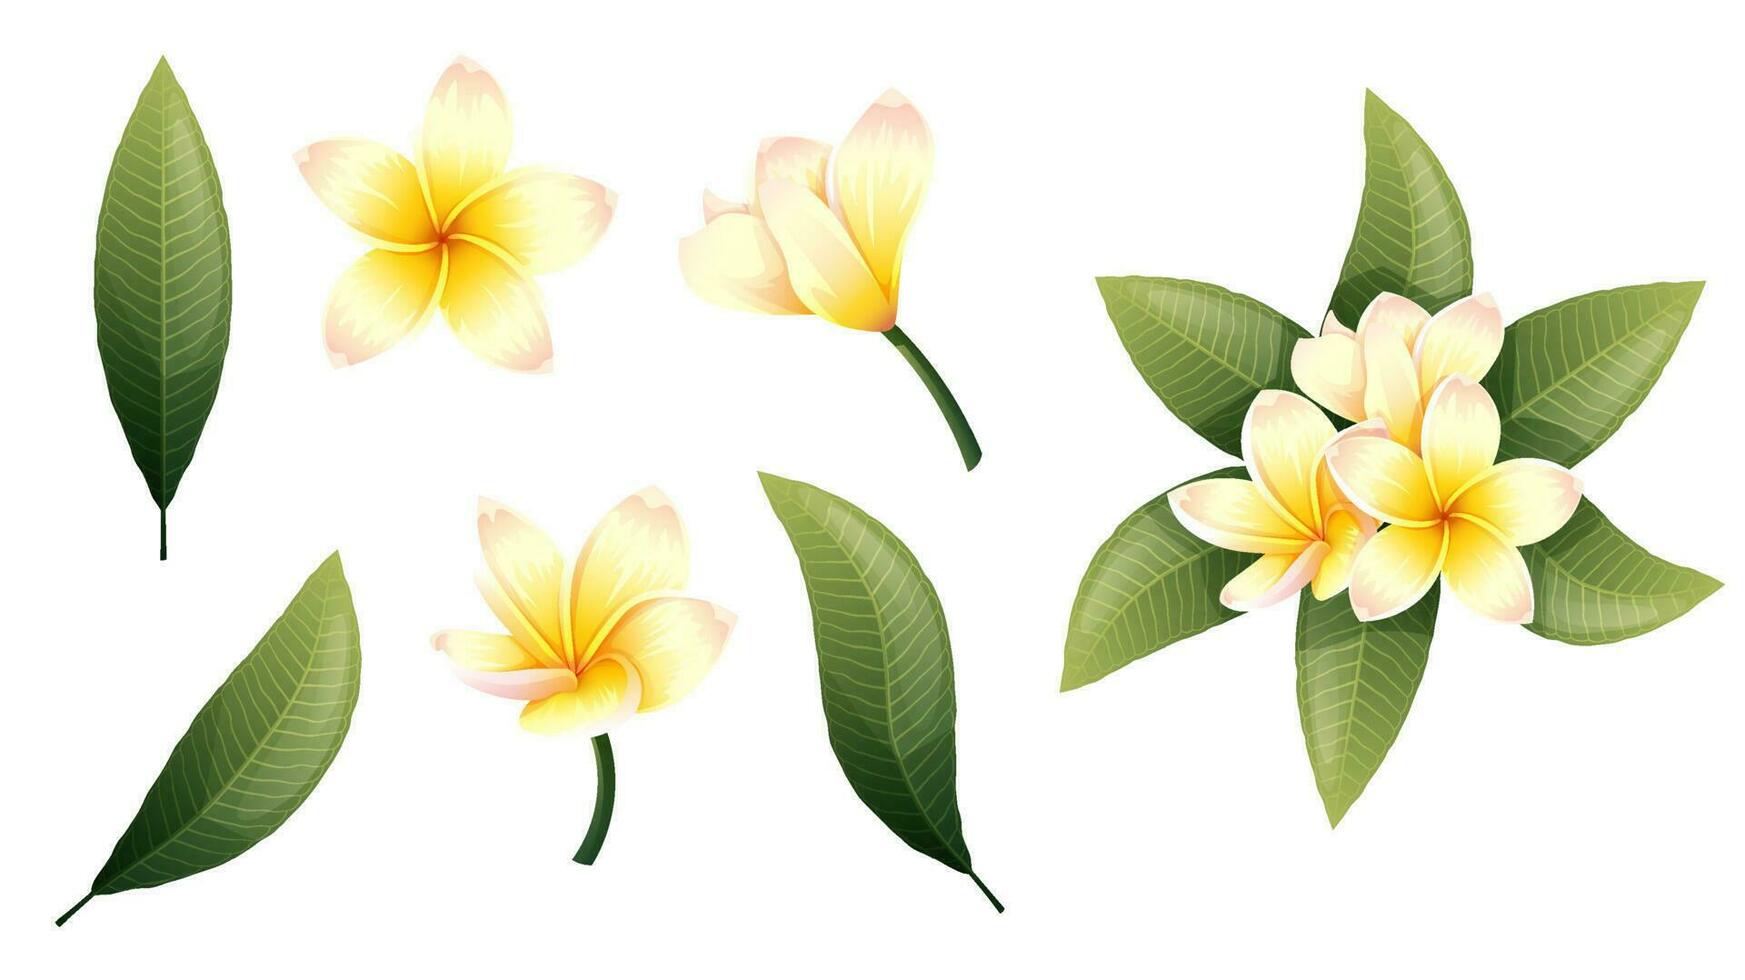 impostato di giallo plumeria fiori e verde le foglie su un isolato sfondo. tropicale frangipani fiore elementi per decorazione, adesivi, disegno, eccetera vettore